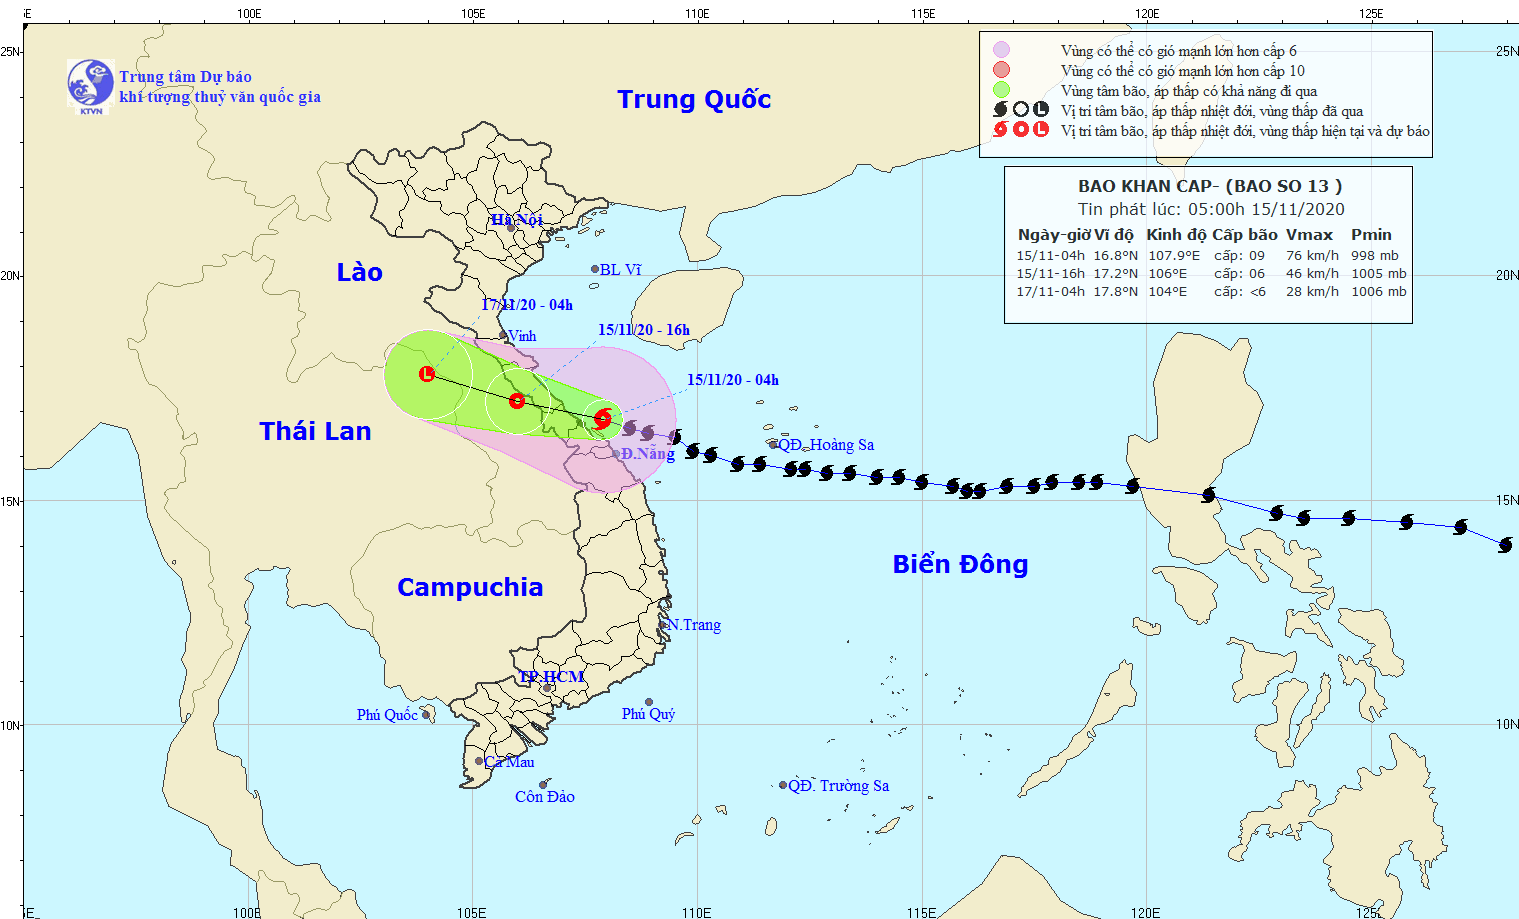 Bão số 13 đi vào đất liền các tỉnh từ Hà Tĩnh đến Thừa Thiên - Huế và suy yếu